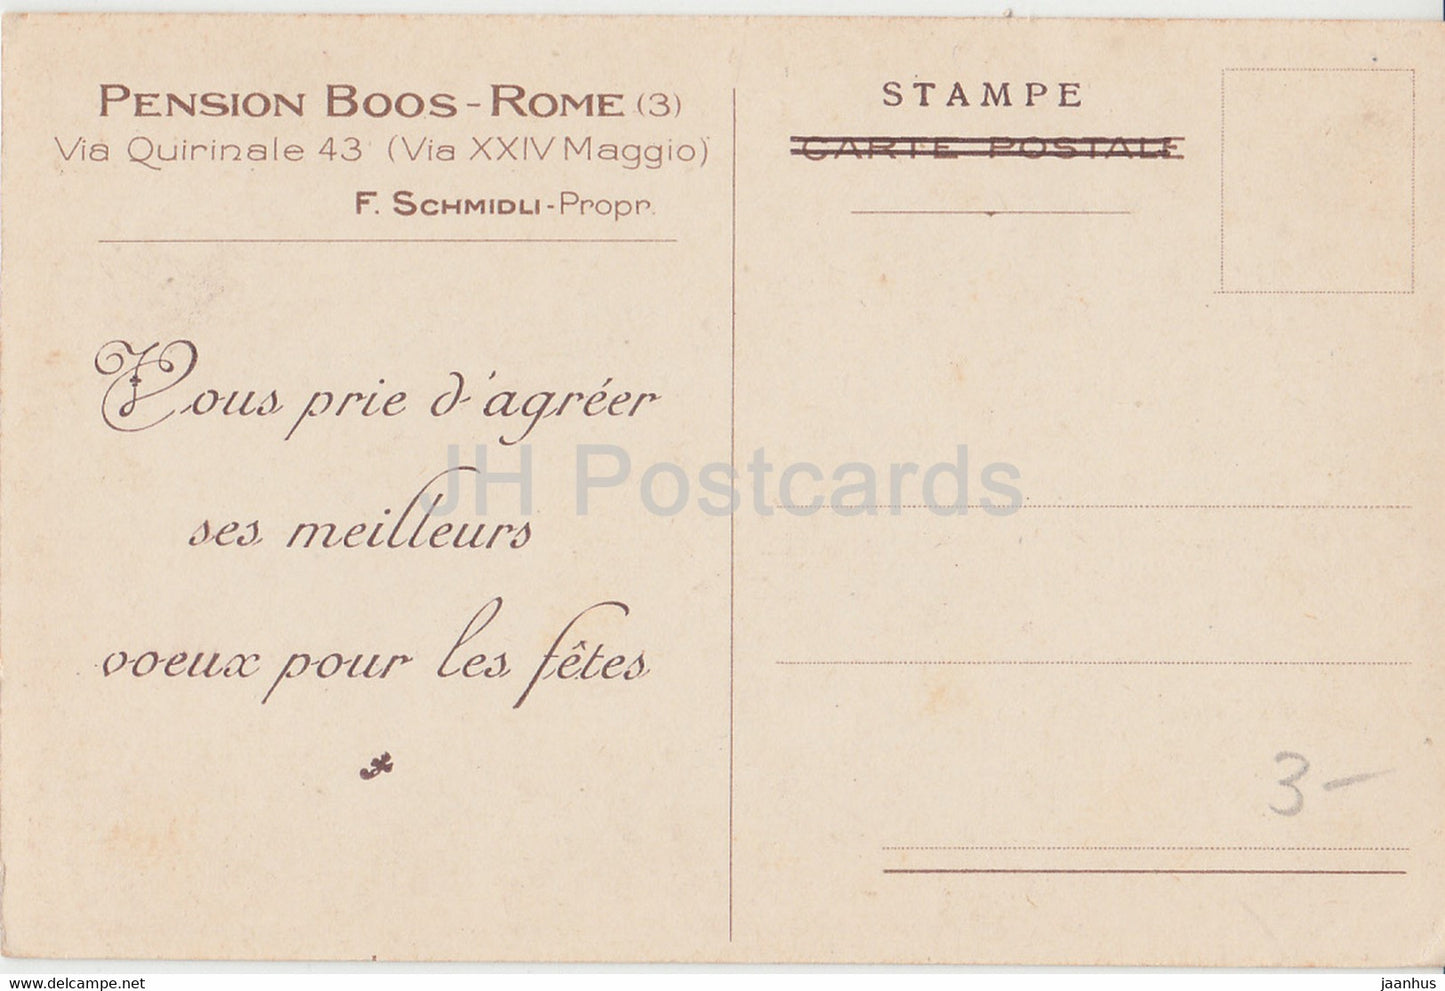 Gemälde von Guido Reni – Aurora – Pferd – Palazzo Rospigliosi Roma – italienische Kunst – alte Postkarte – Italien – unbenutzt